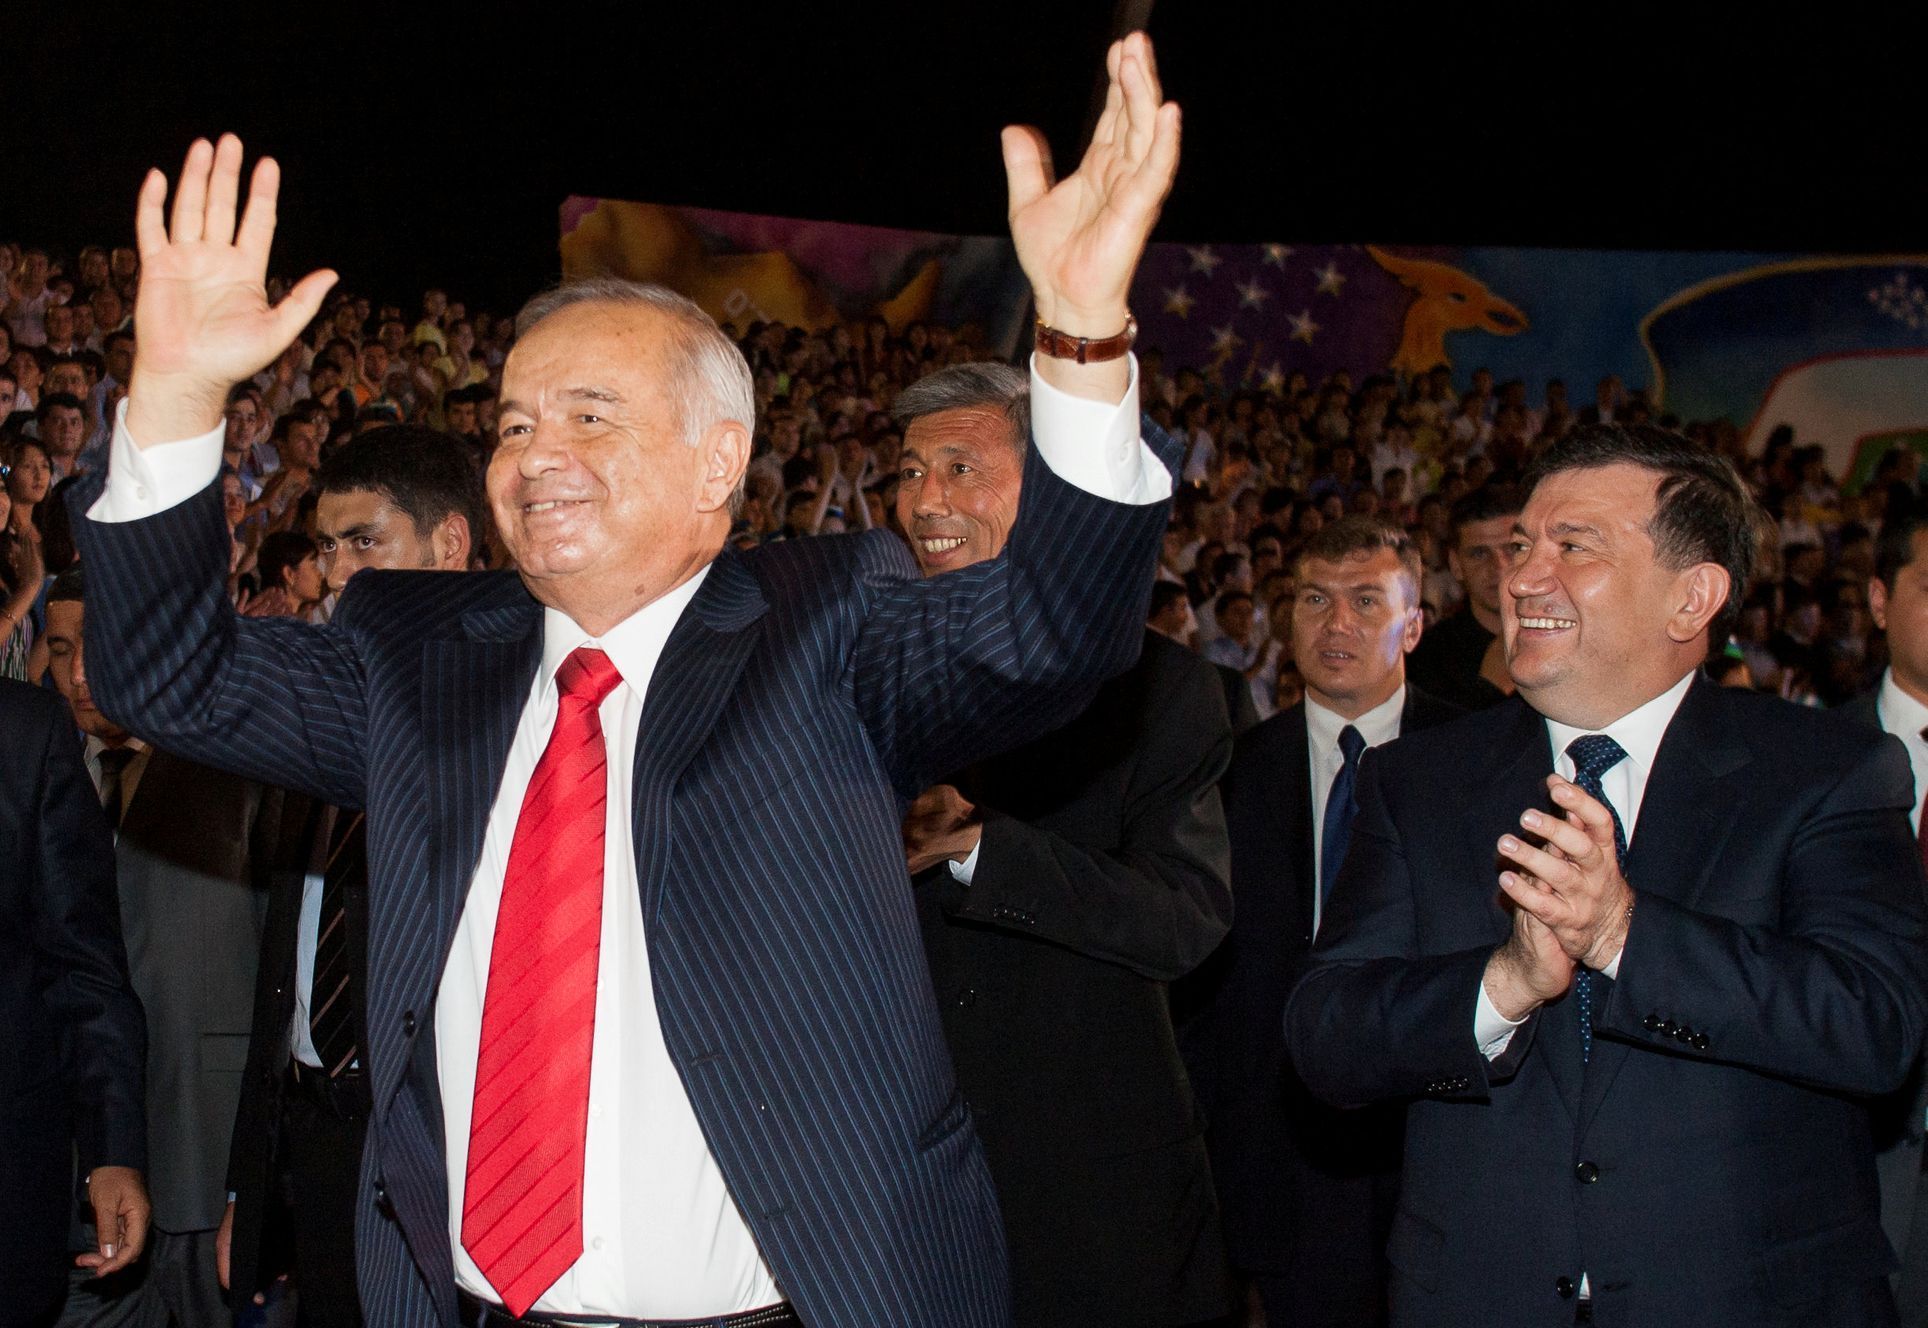 Uzbecký prezident Karimov a premiér Mirzijojev